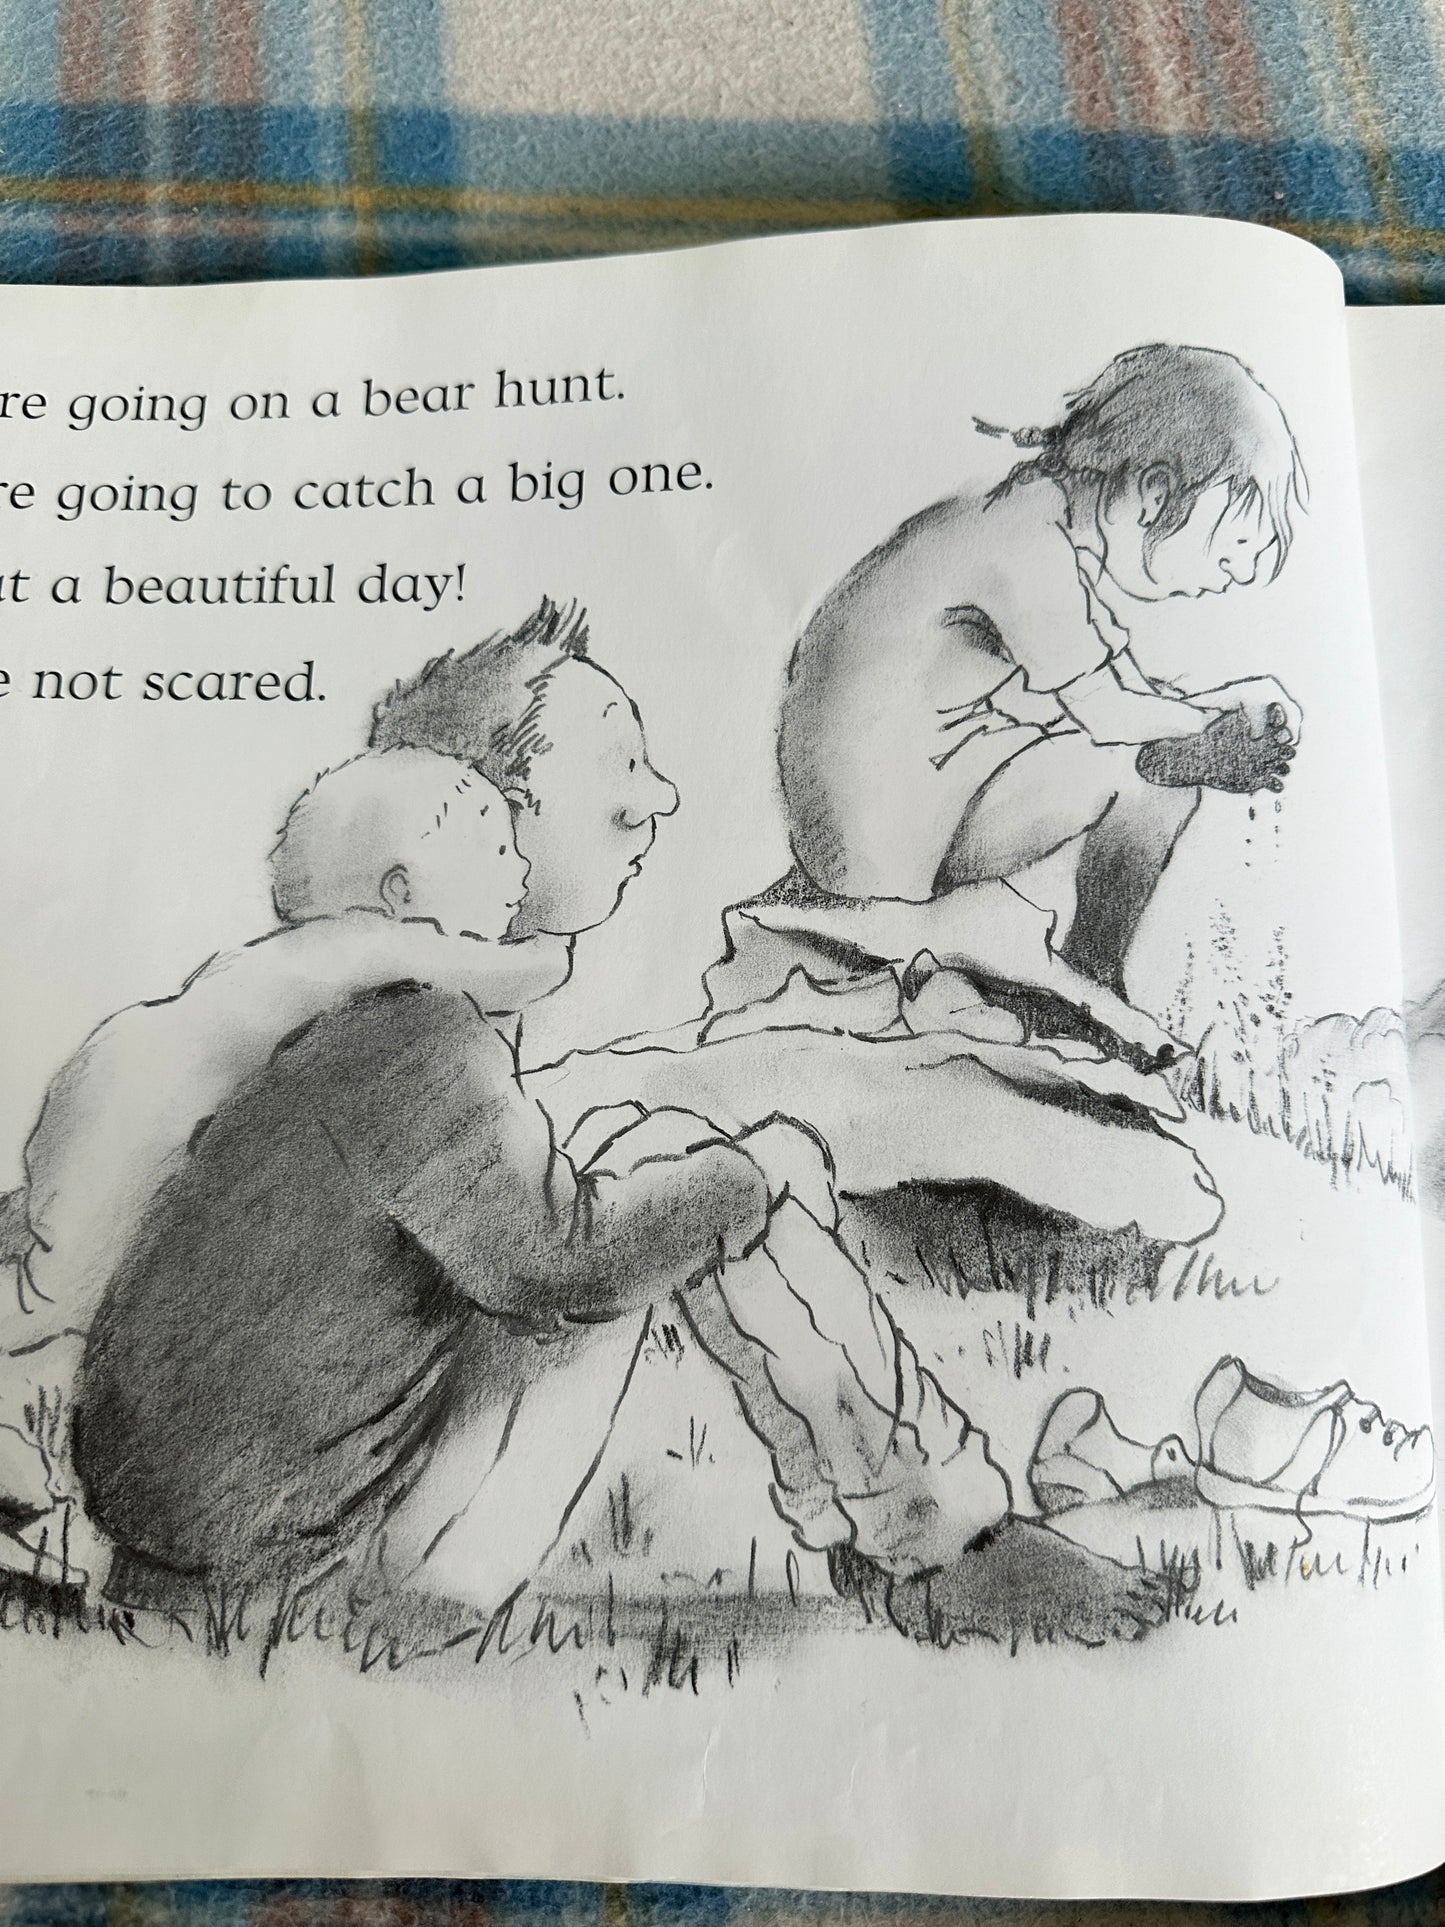 1993 We’re Going On A Bear Hunt - Michael Rosen(Helen Oxenbury illustration)Walker Books